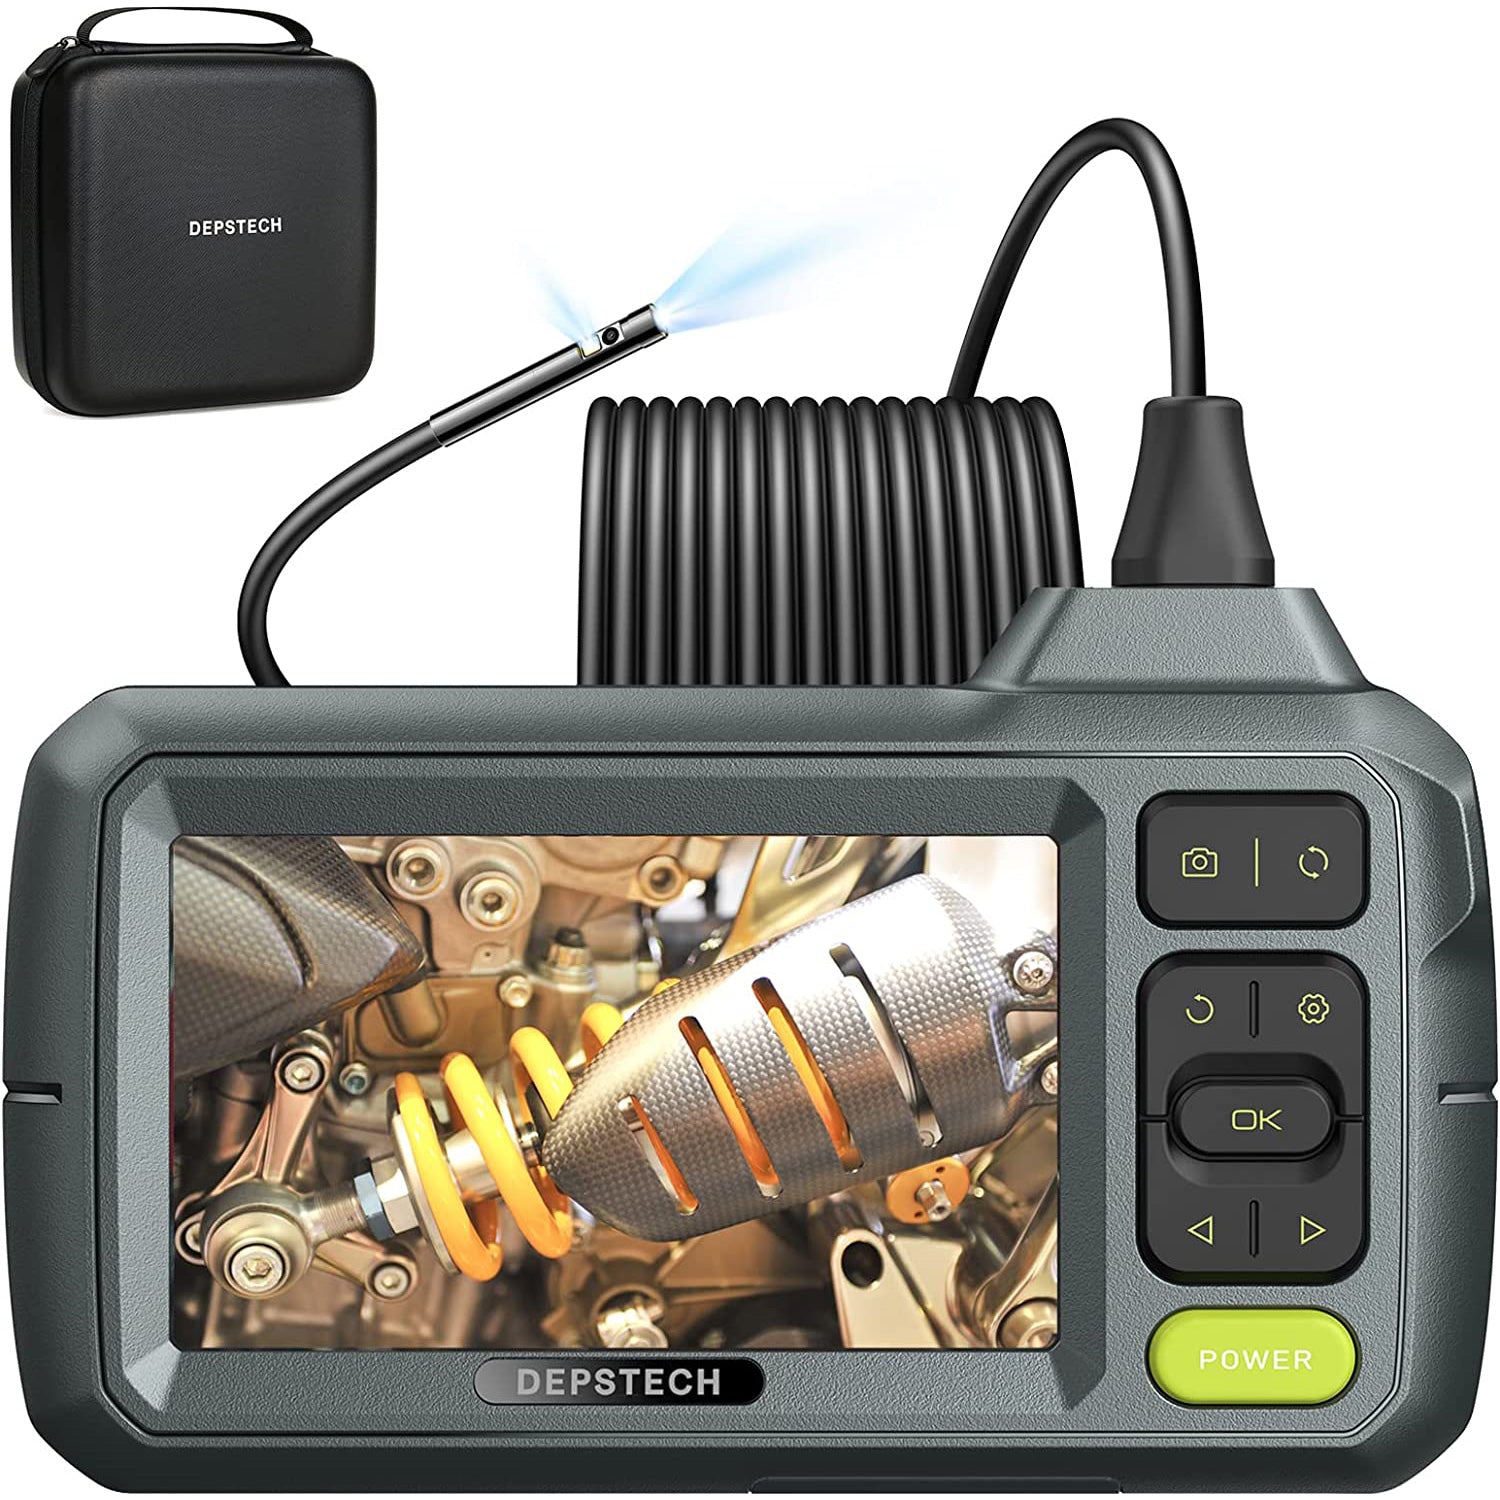 Endoscope caméra d'inspection avec écran - Europe-connection